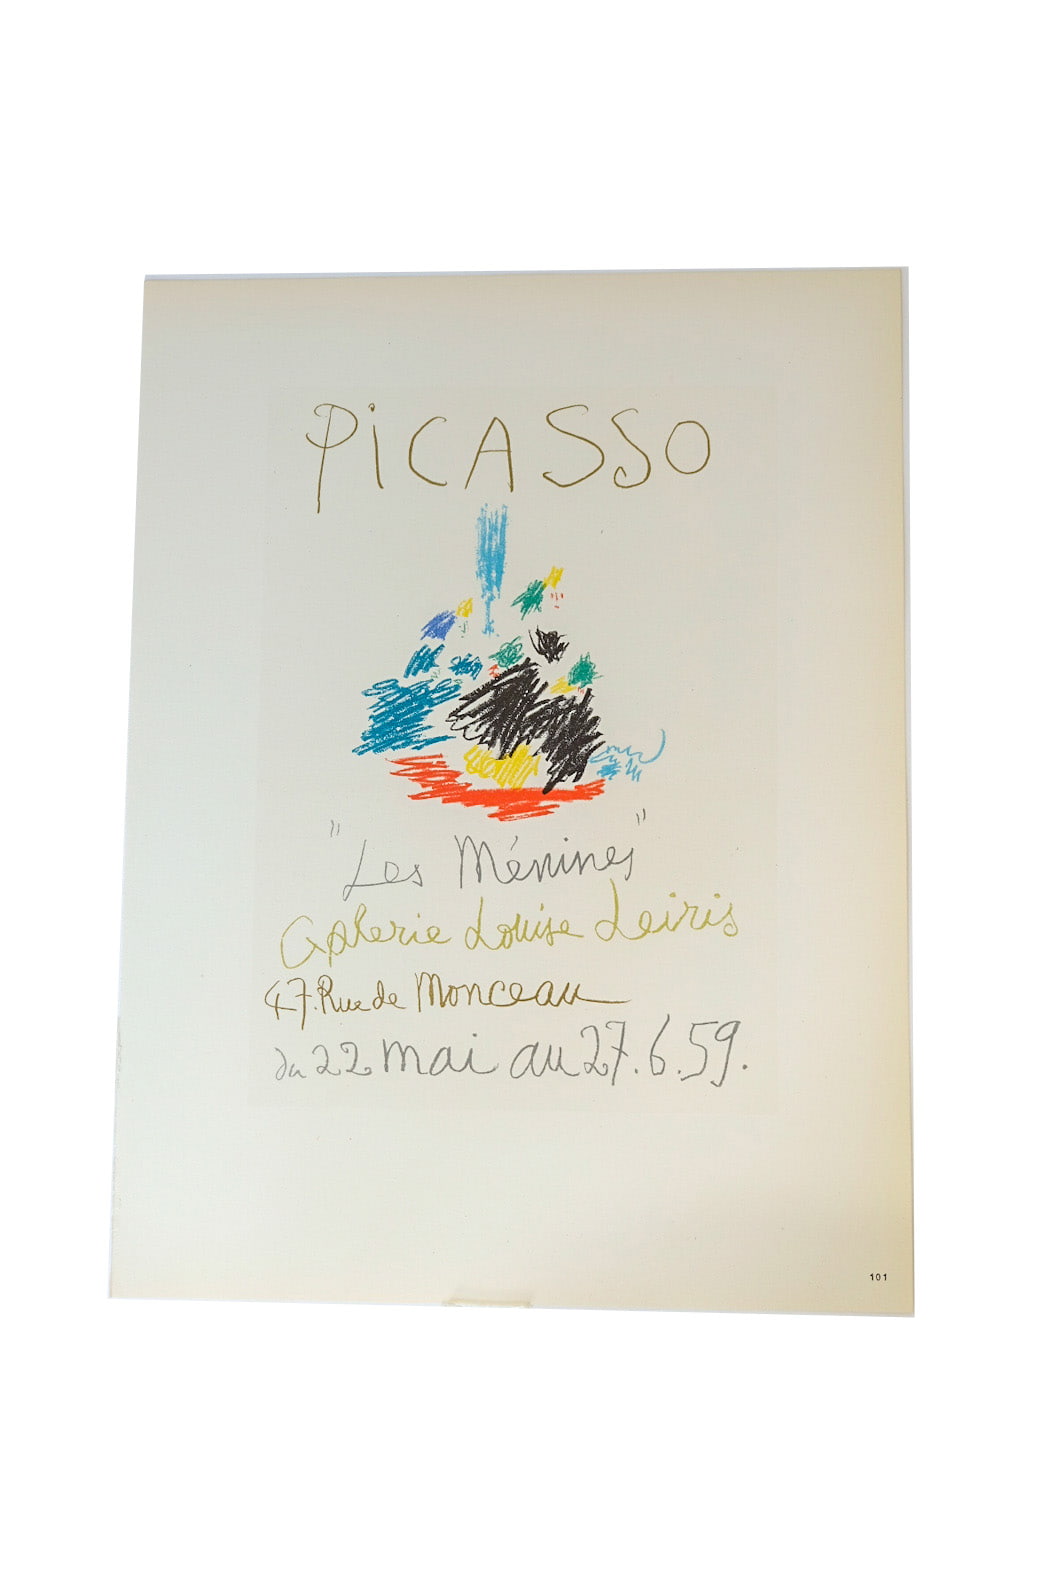 Pablo Picasso Les Ménines Galerie Louise Leiris Page 101